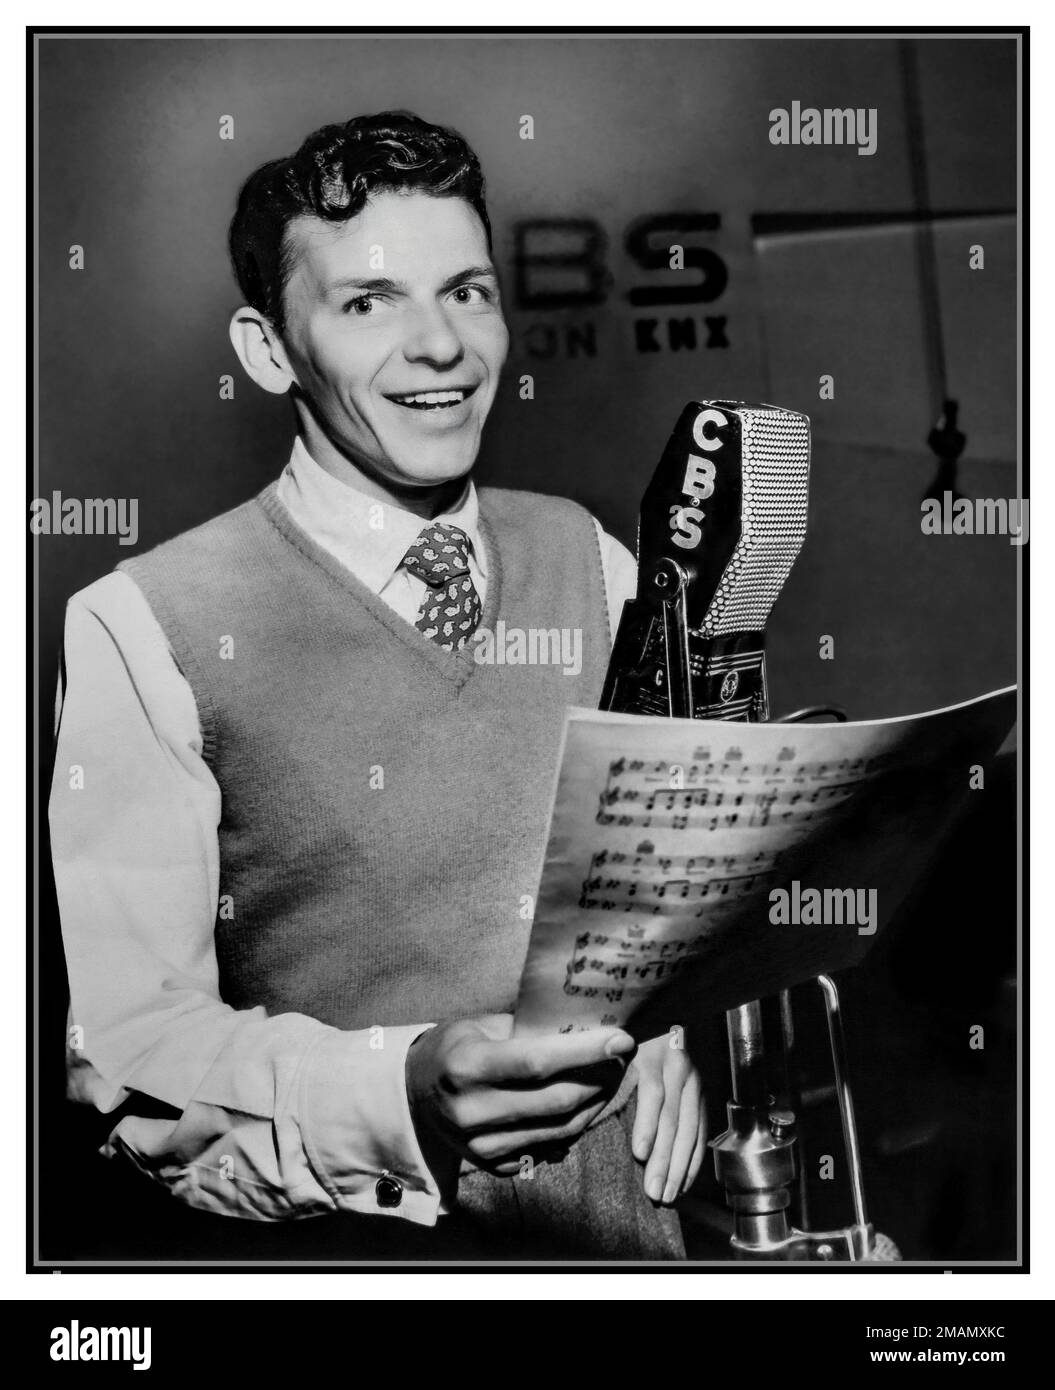 FRANK SINATRA 1940s Foto publicitaria de Frank Sinatra en 1944 con un micrófono de CBS, promoviendo el programa Frank Sinatra en CBS Radio Hollywood Publicity Still America USA. Foto de stock